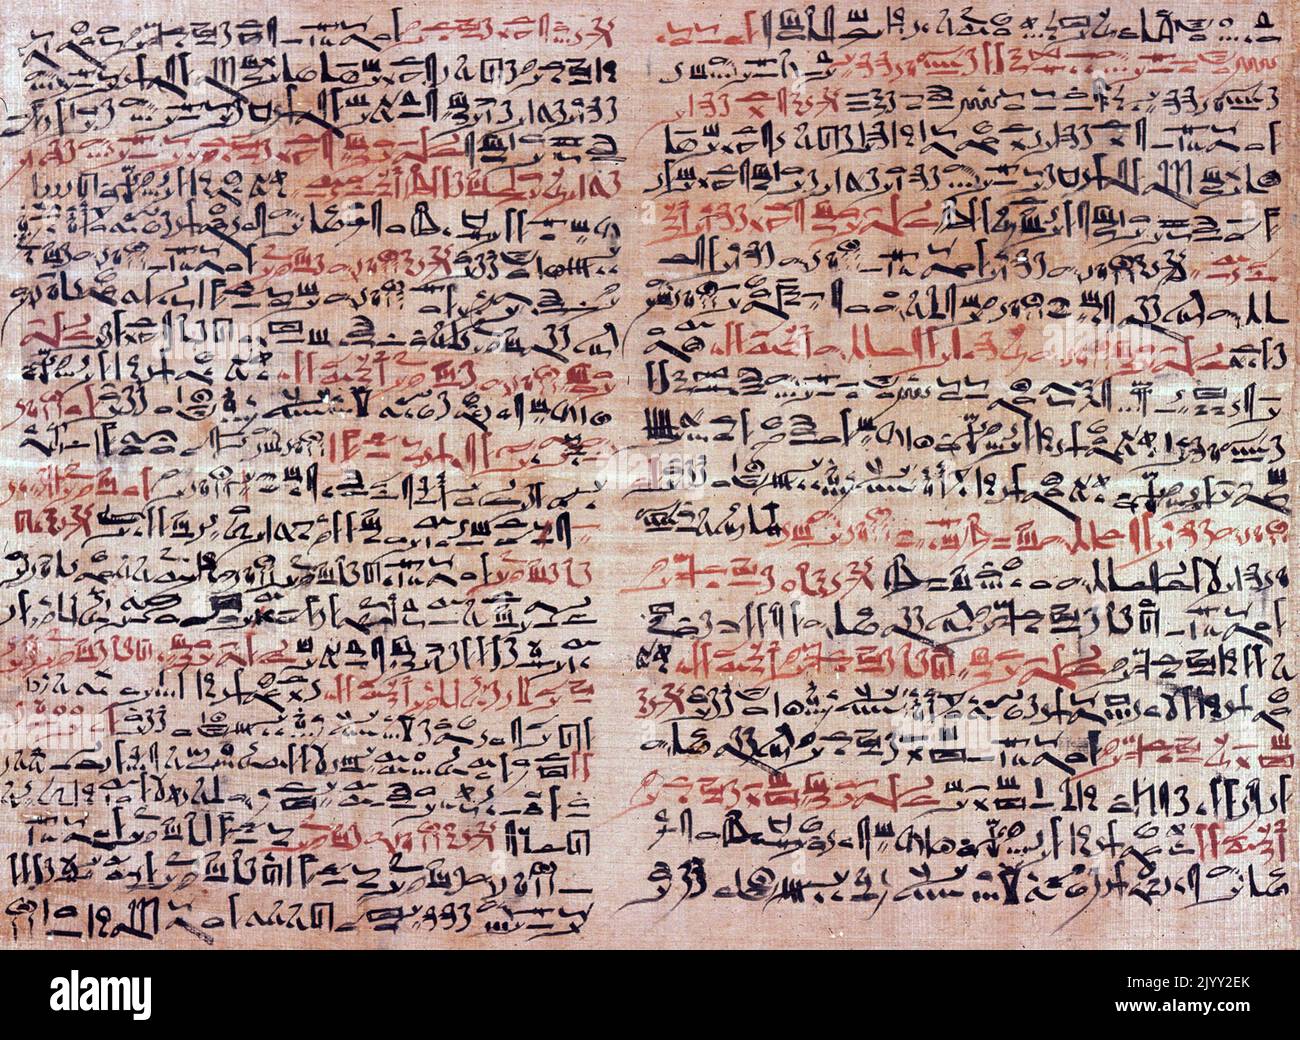 L'Edwin Smith Papyrus è un antico testo medico egiziano, che prende il nome dal commerciante che l'ha acquistata nel 1862, e il più antico trattato chirurgico noto, sul trauma. Questo documento, che può essere stato un manuale di chirurgia militare, descrive 48 casi di lesioni, fratture, ferite, dislocazioni e tumori. Risale alle dinastie 16-17 del secondo periodo intermedio nell'antico Egitto, c. 1600 A.C. Foto Stock